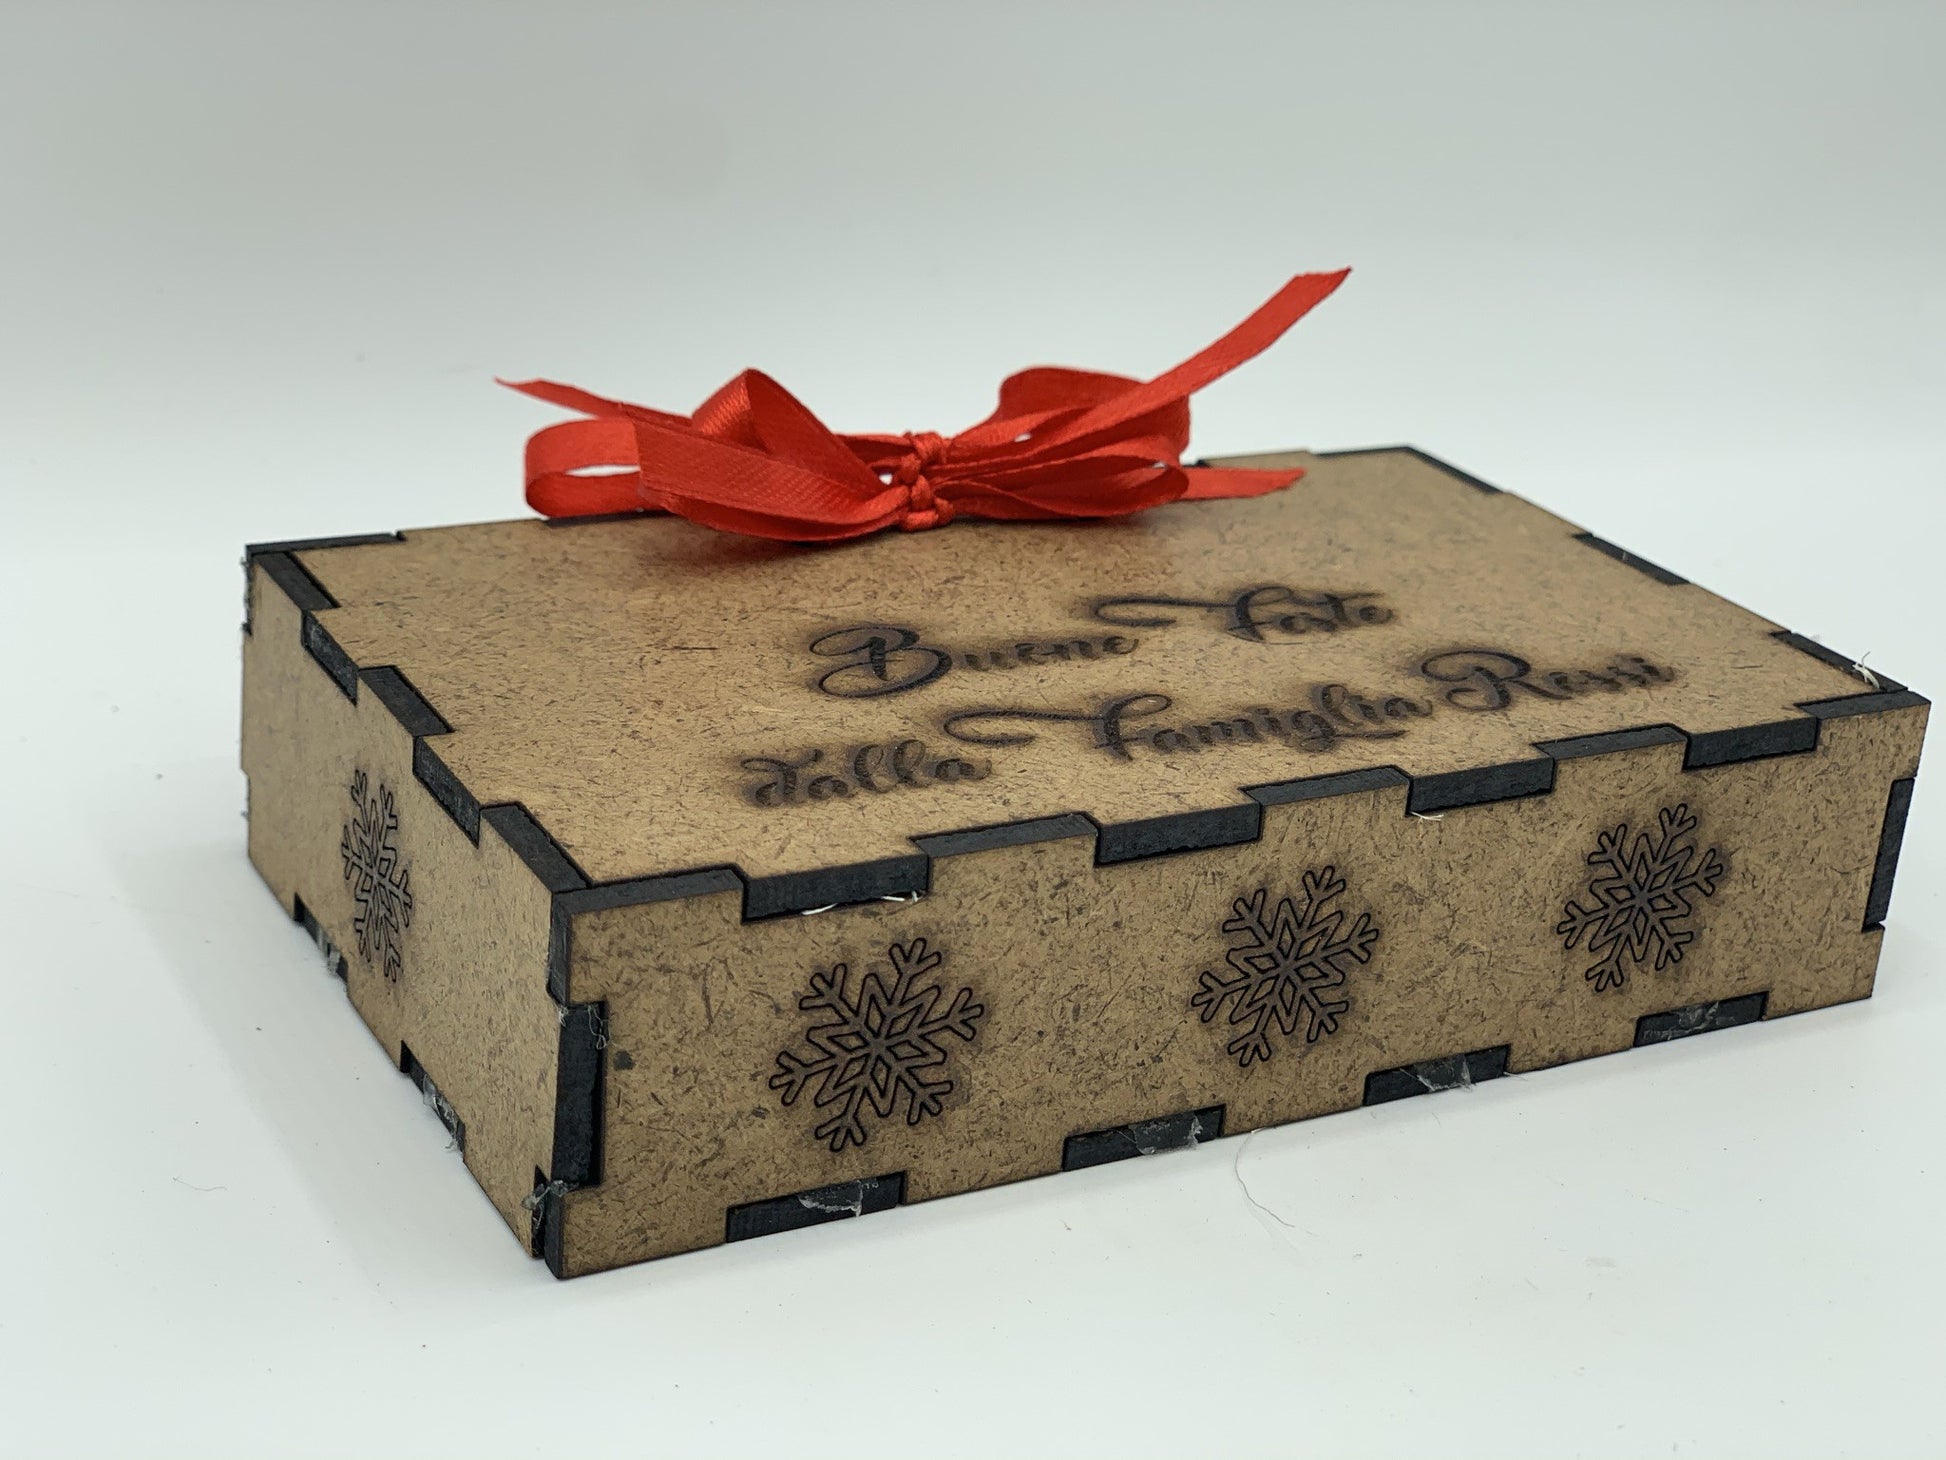 Papillon in legno Mappamondo con scatola regalo personalizzata Idea's Cottage